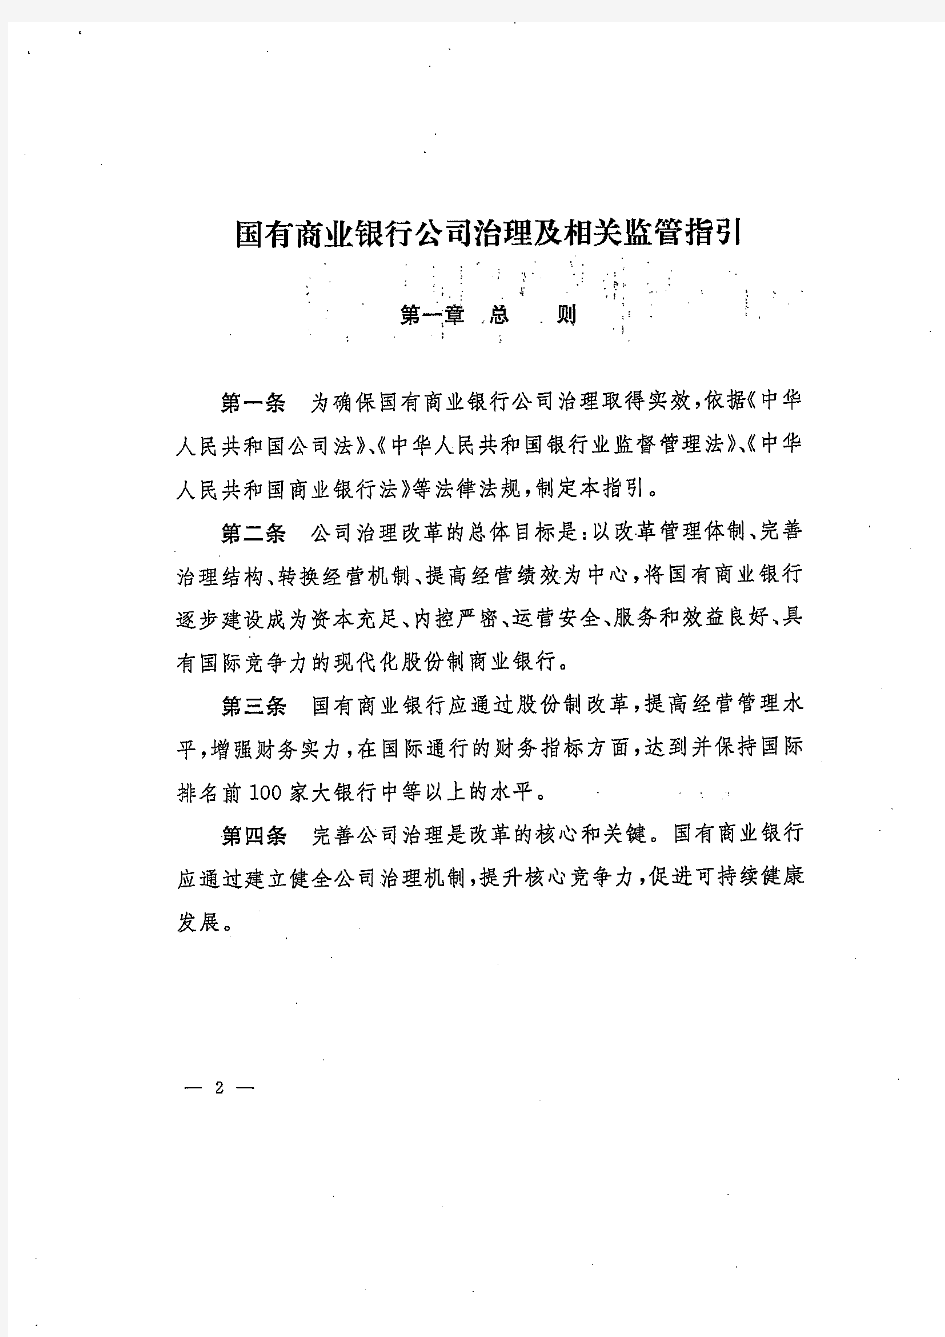 中国银行业监督管理委员会关于印发《国有商业银行公司治理及相关监管指引》的通知